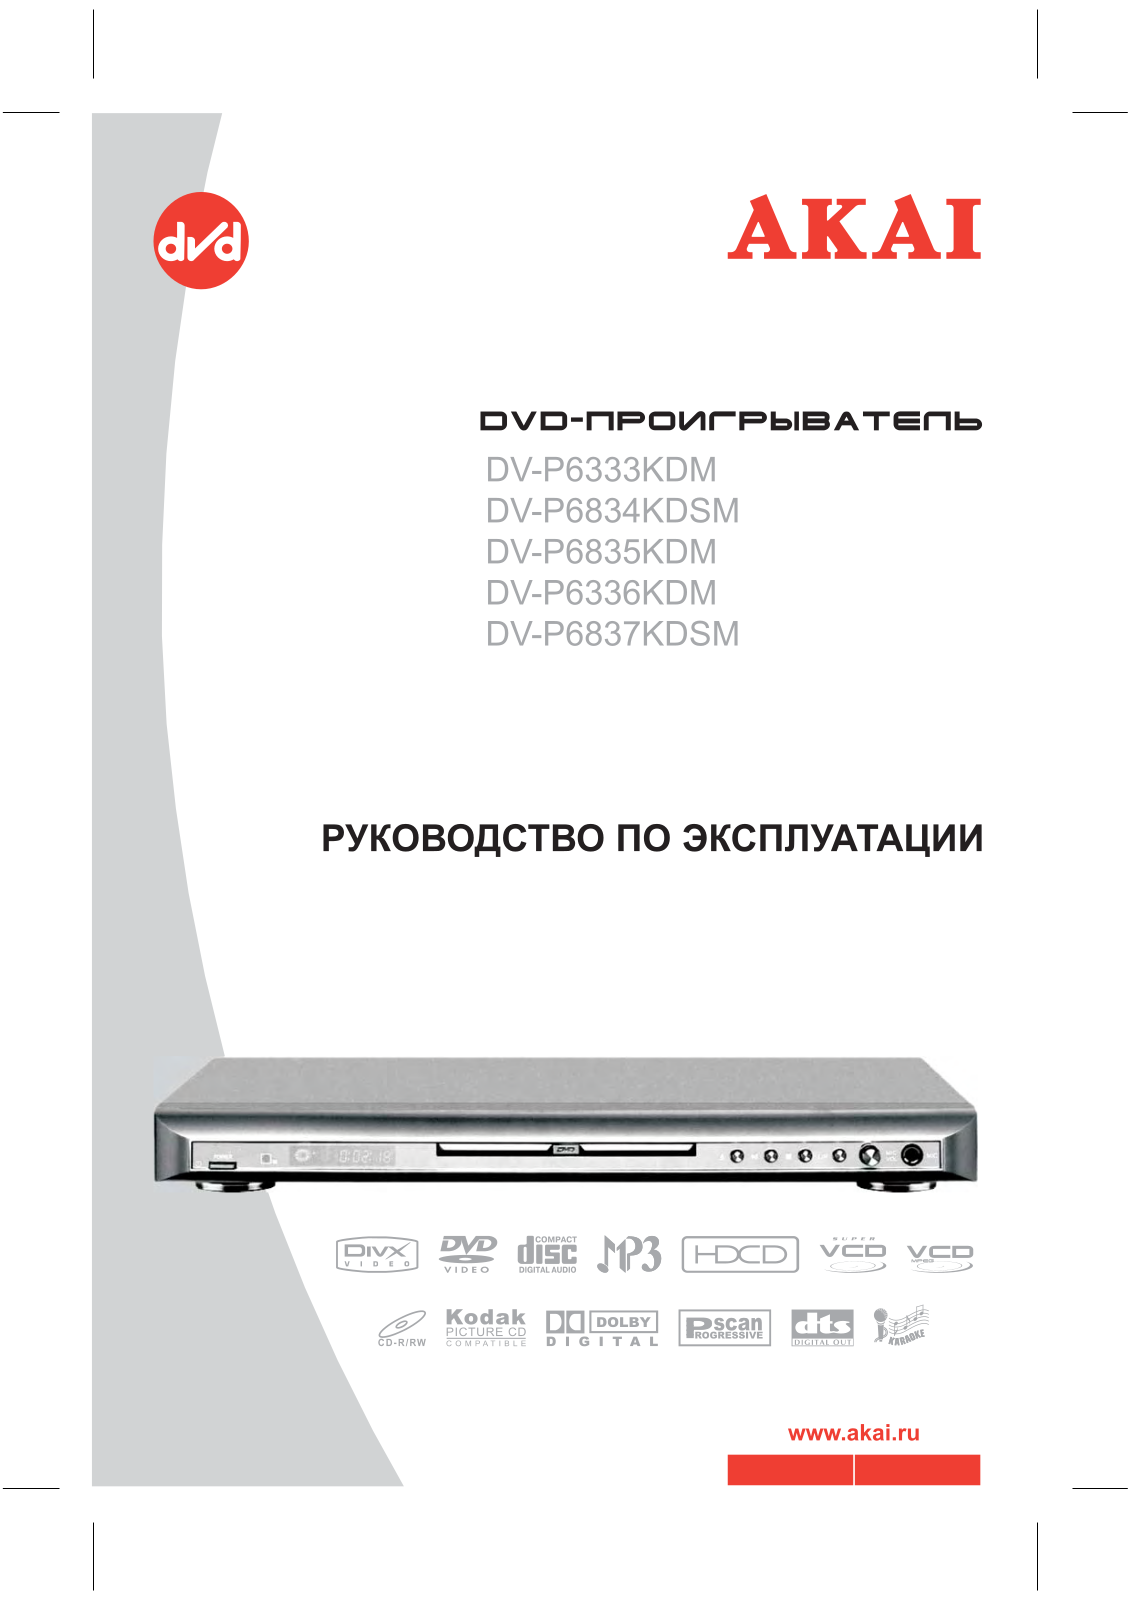 Akai DV-P6835KDM, DV-P6333KDM, DV-P6834KDSM, DV-P6837KDSM, DV-P6336KDM User Manual